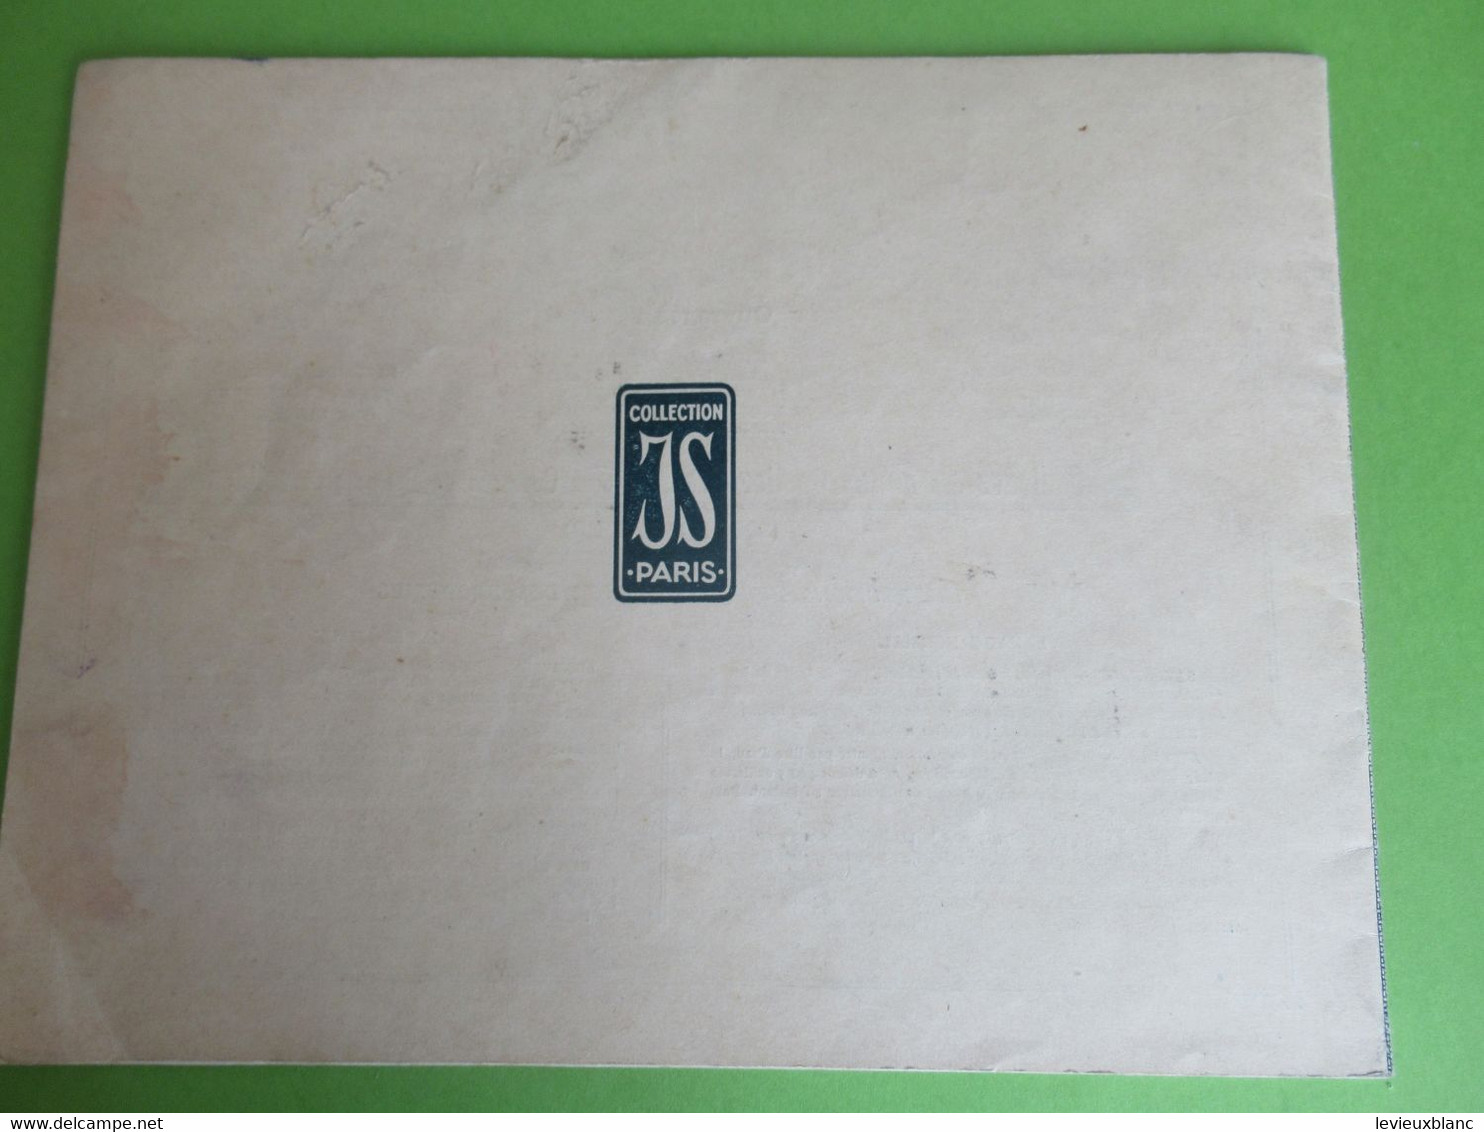 Catalogue/ Les Jours Modernes à Fils Tirés/Collection JS/Album N°2/ CB à La Croix/Vers 1920-1930                   MER73 - Spitzen Und Stoffe